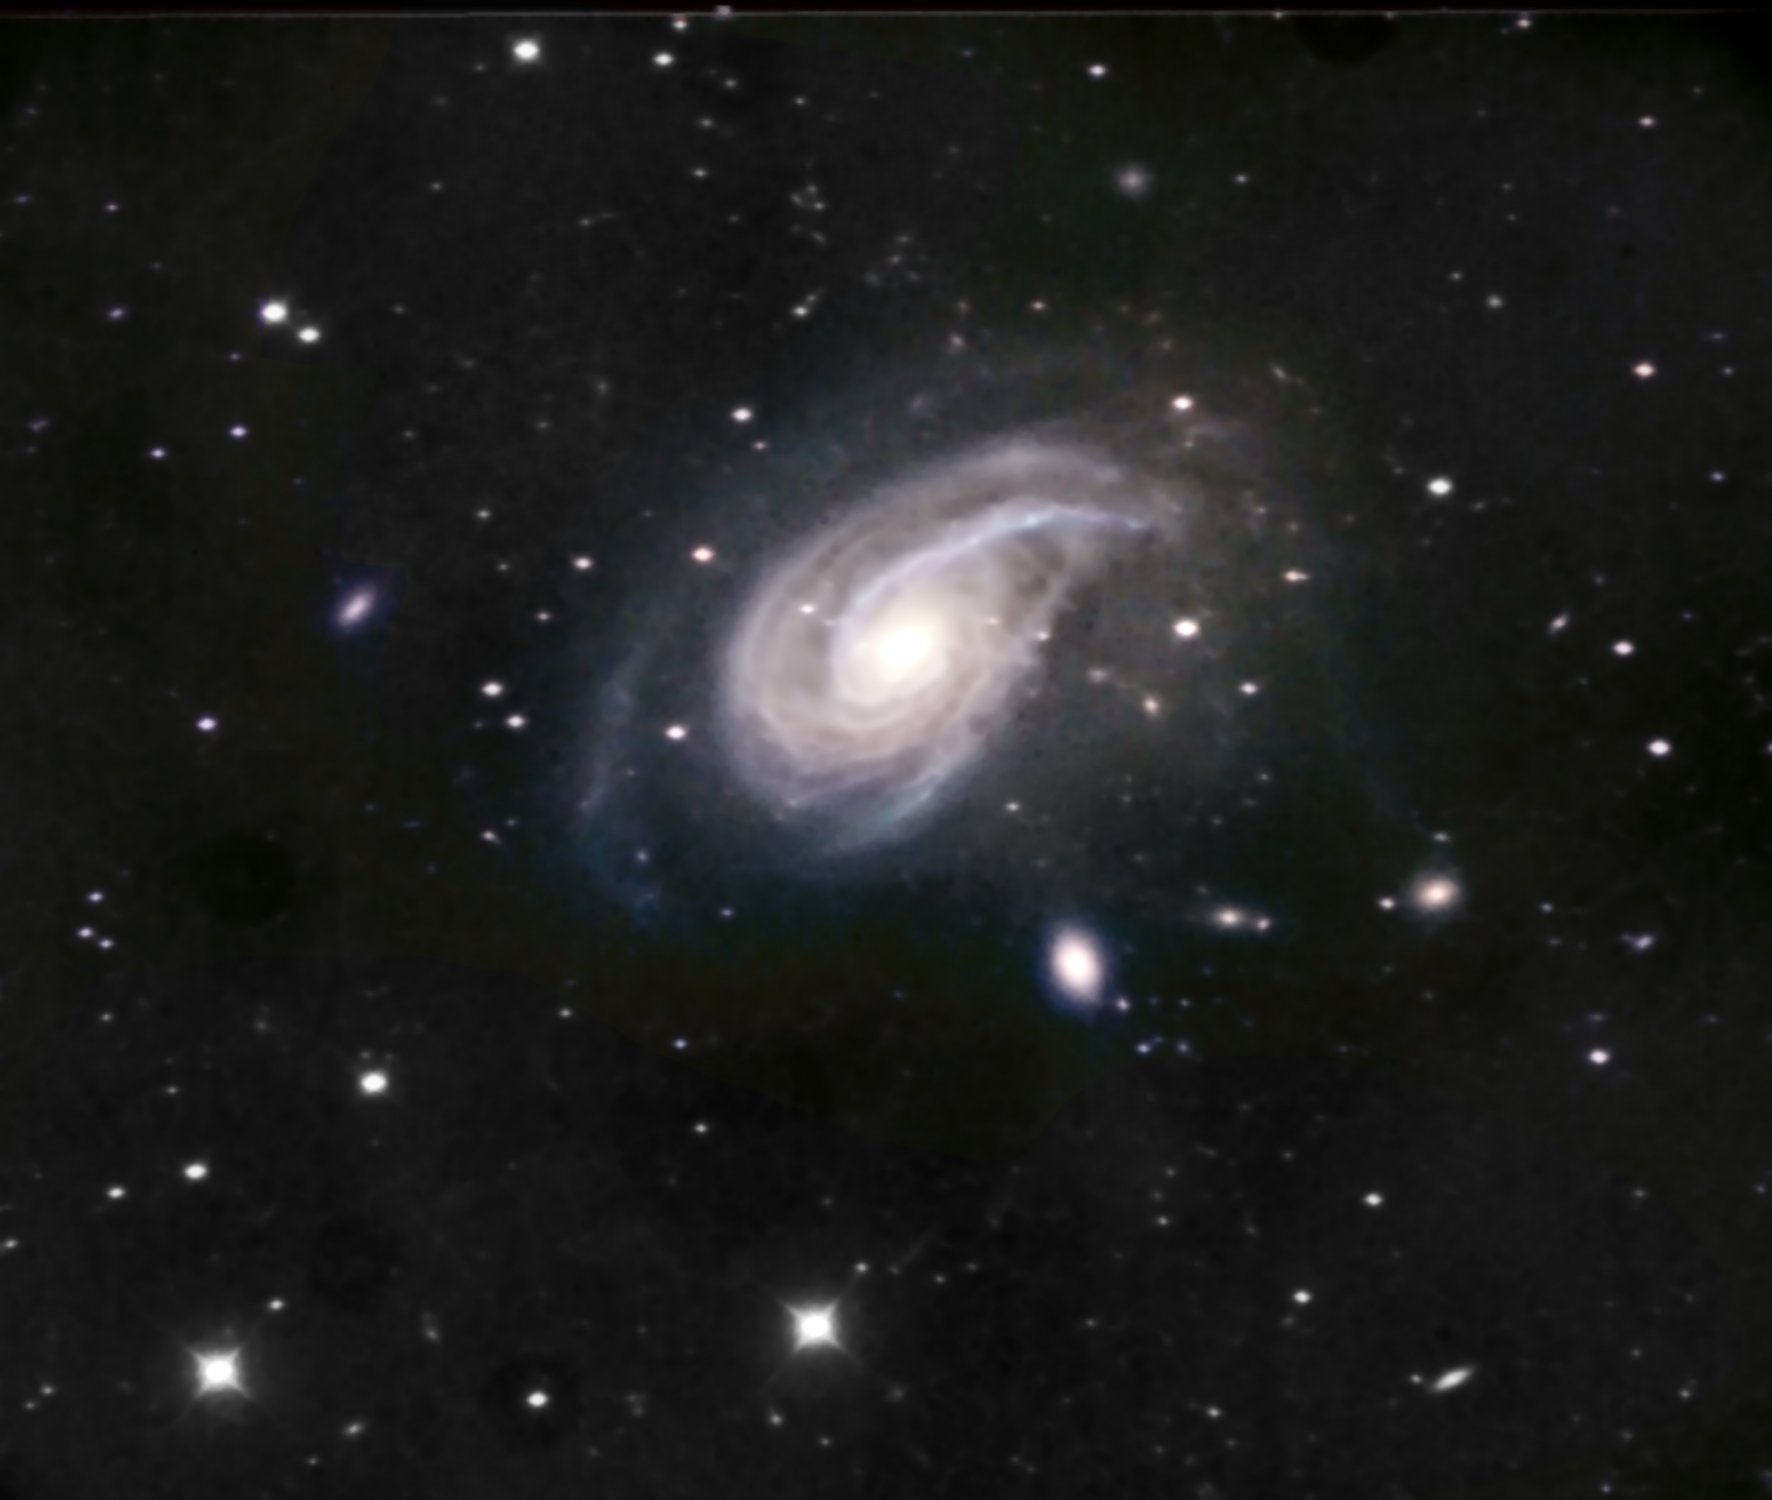 NGC772, color